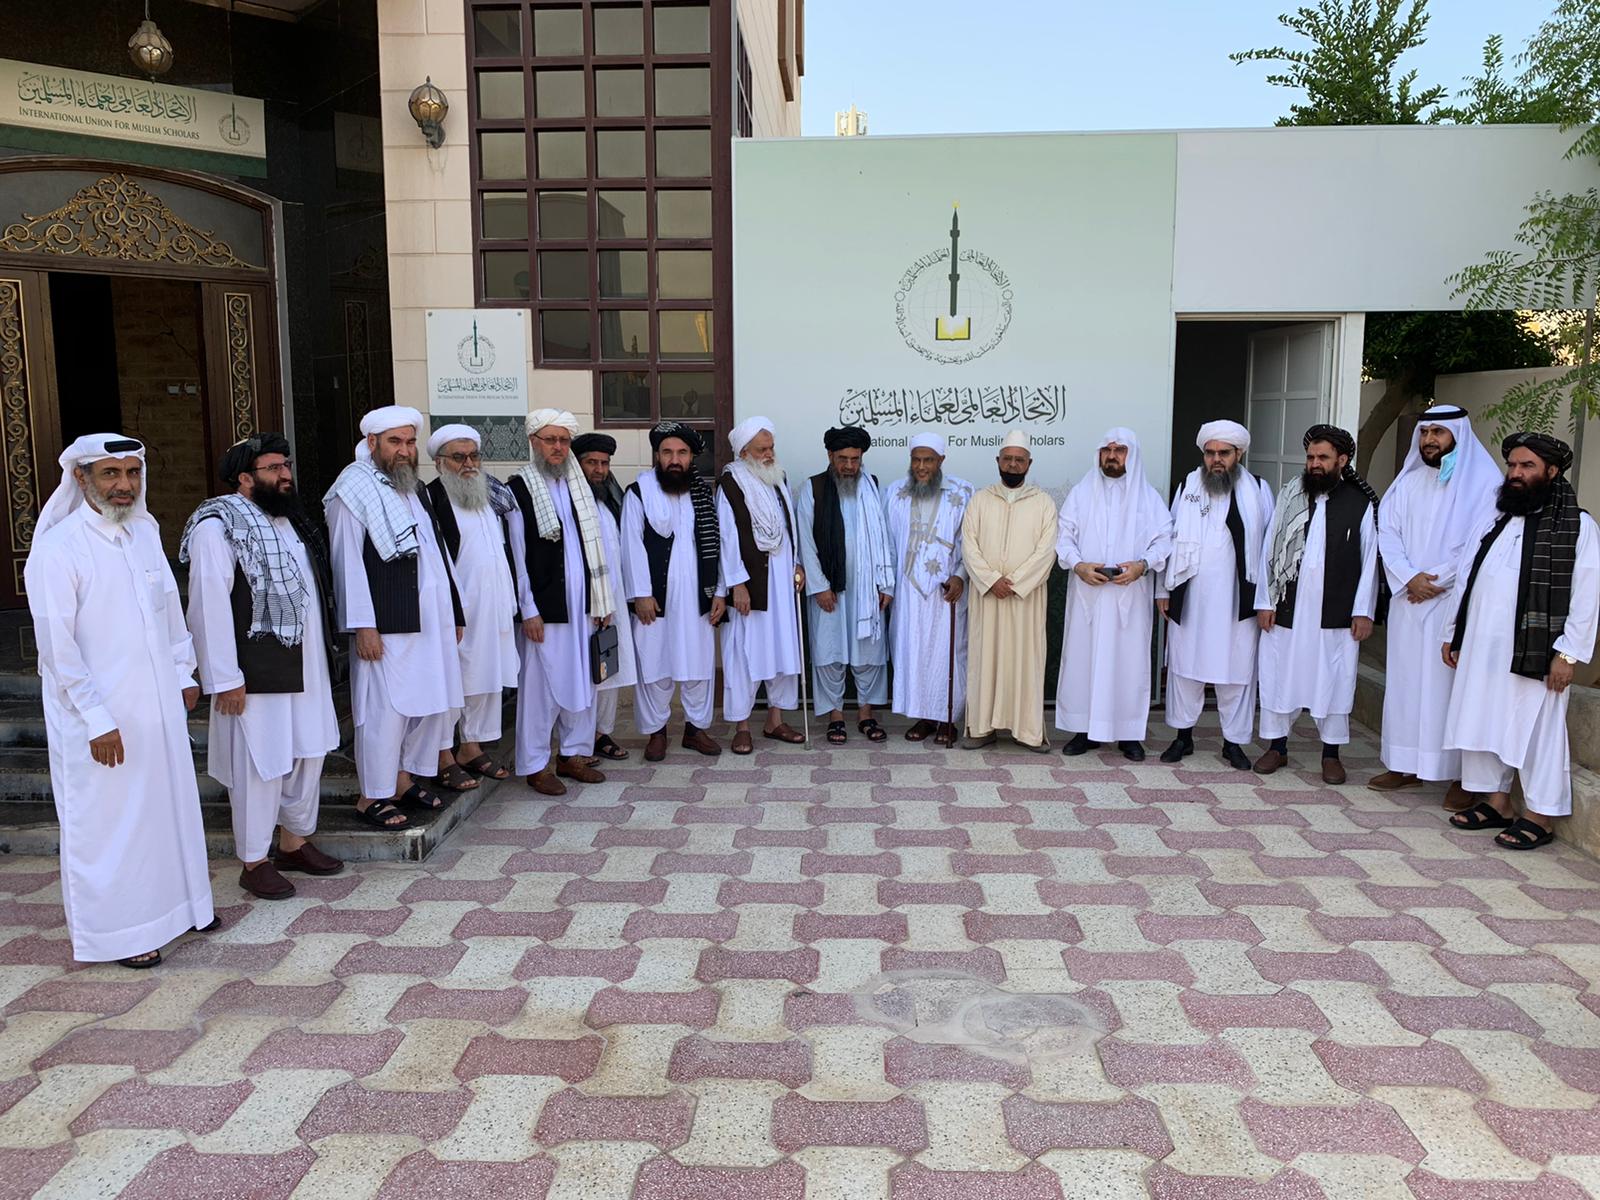 رئیس تیم مذاکراتی امارت اسلامی و هیئت همراهش با رئیس سازمان جهانی علما شیخ احمد الریسونی دیدار نمودند